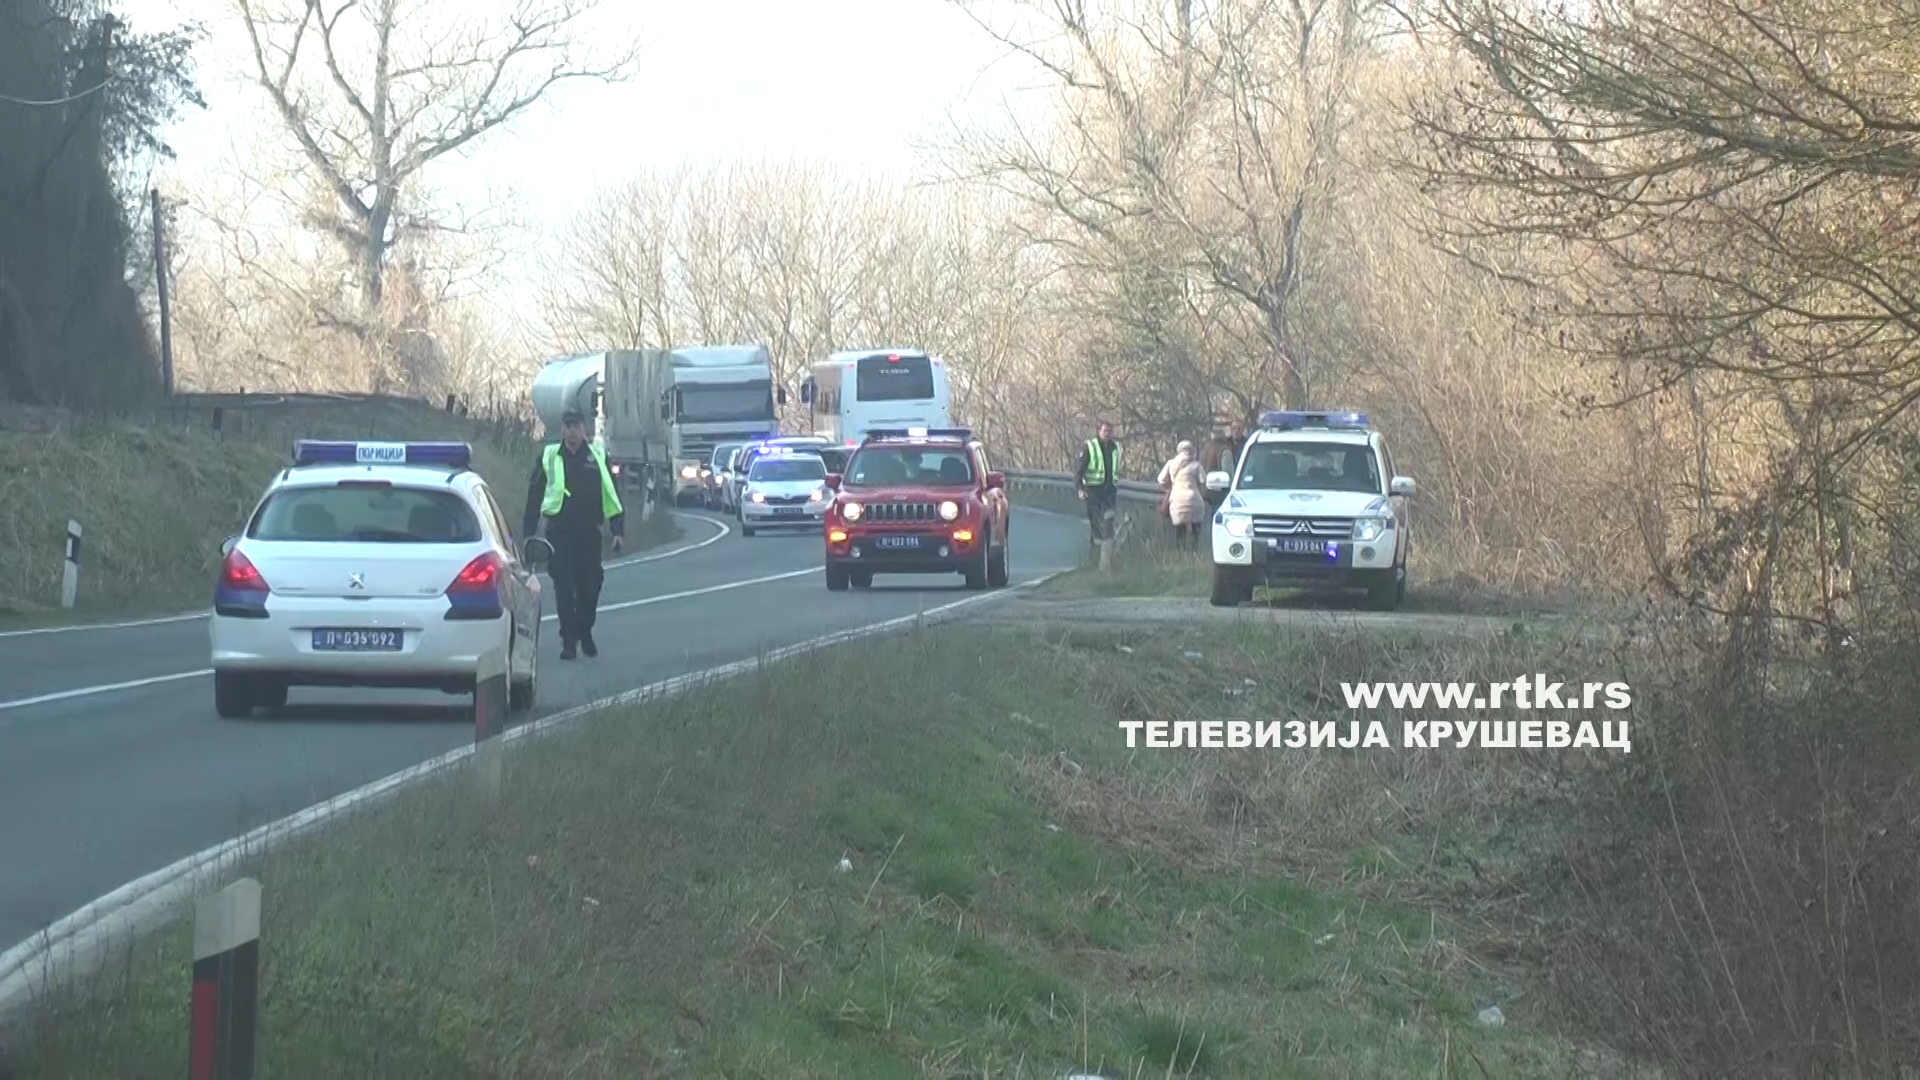 Policija pronašla vozilo, a potom i beživotno telo u Zapadnoj Moravi